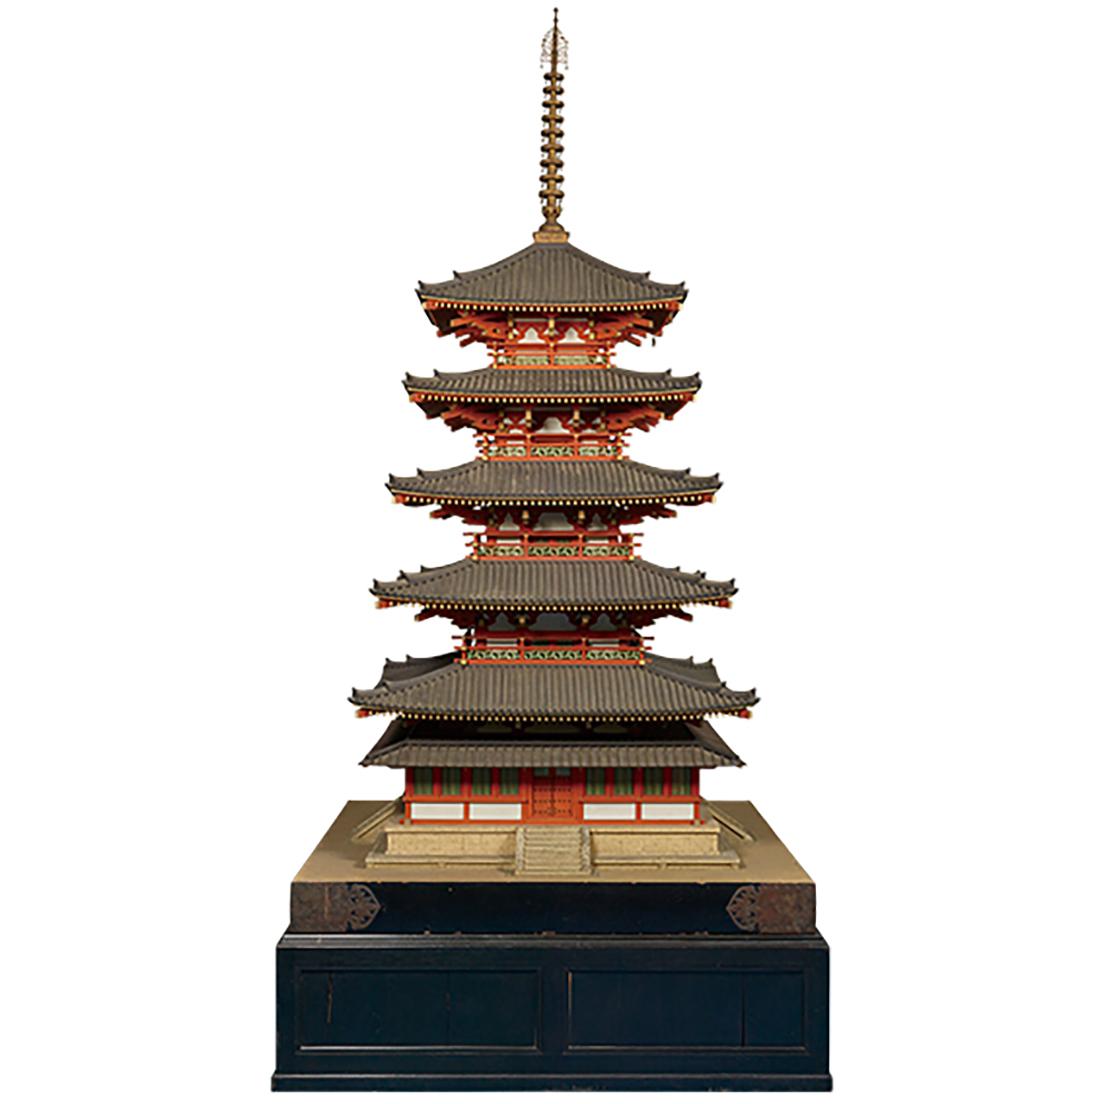 法隆寺五重塔 1/10模型 1932 年 東京国立博物館蔵 展示会場：東京国立博物館